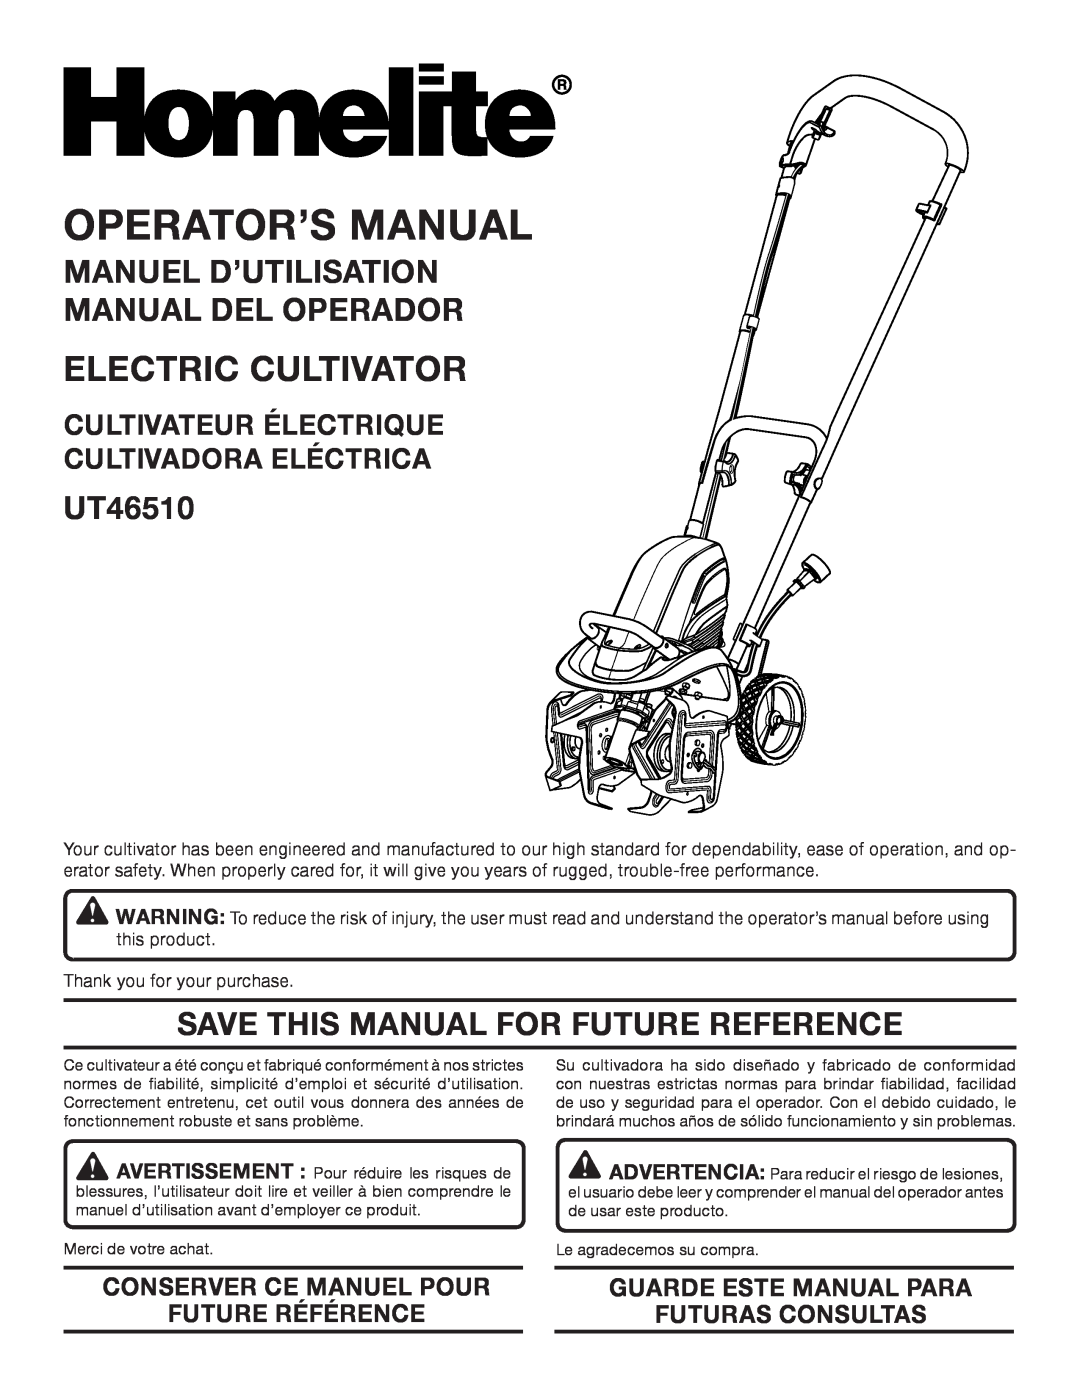 Homelite UT46510 manuel dutilisation Manuel D’Utilisation Manual Del Operador, Save This Manual For Future Reference 